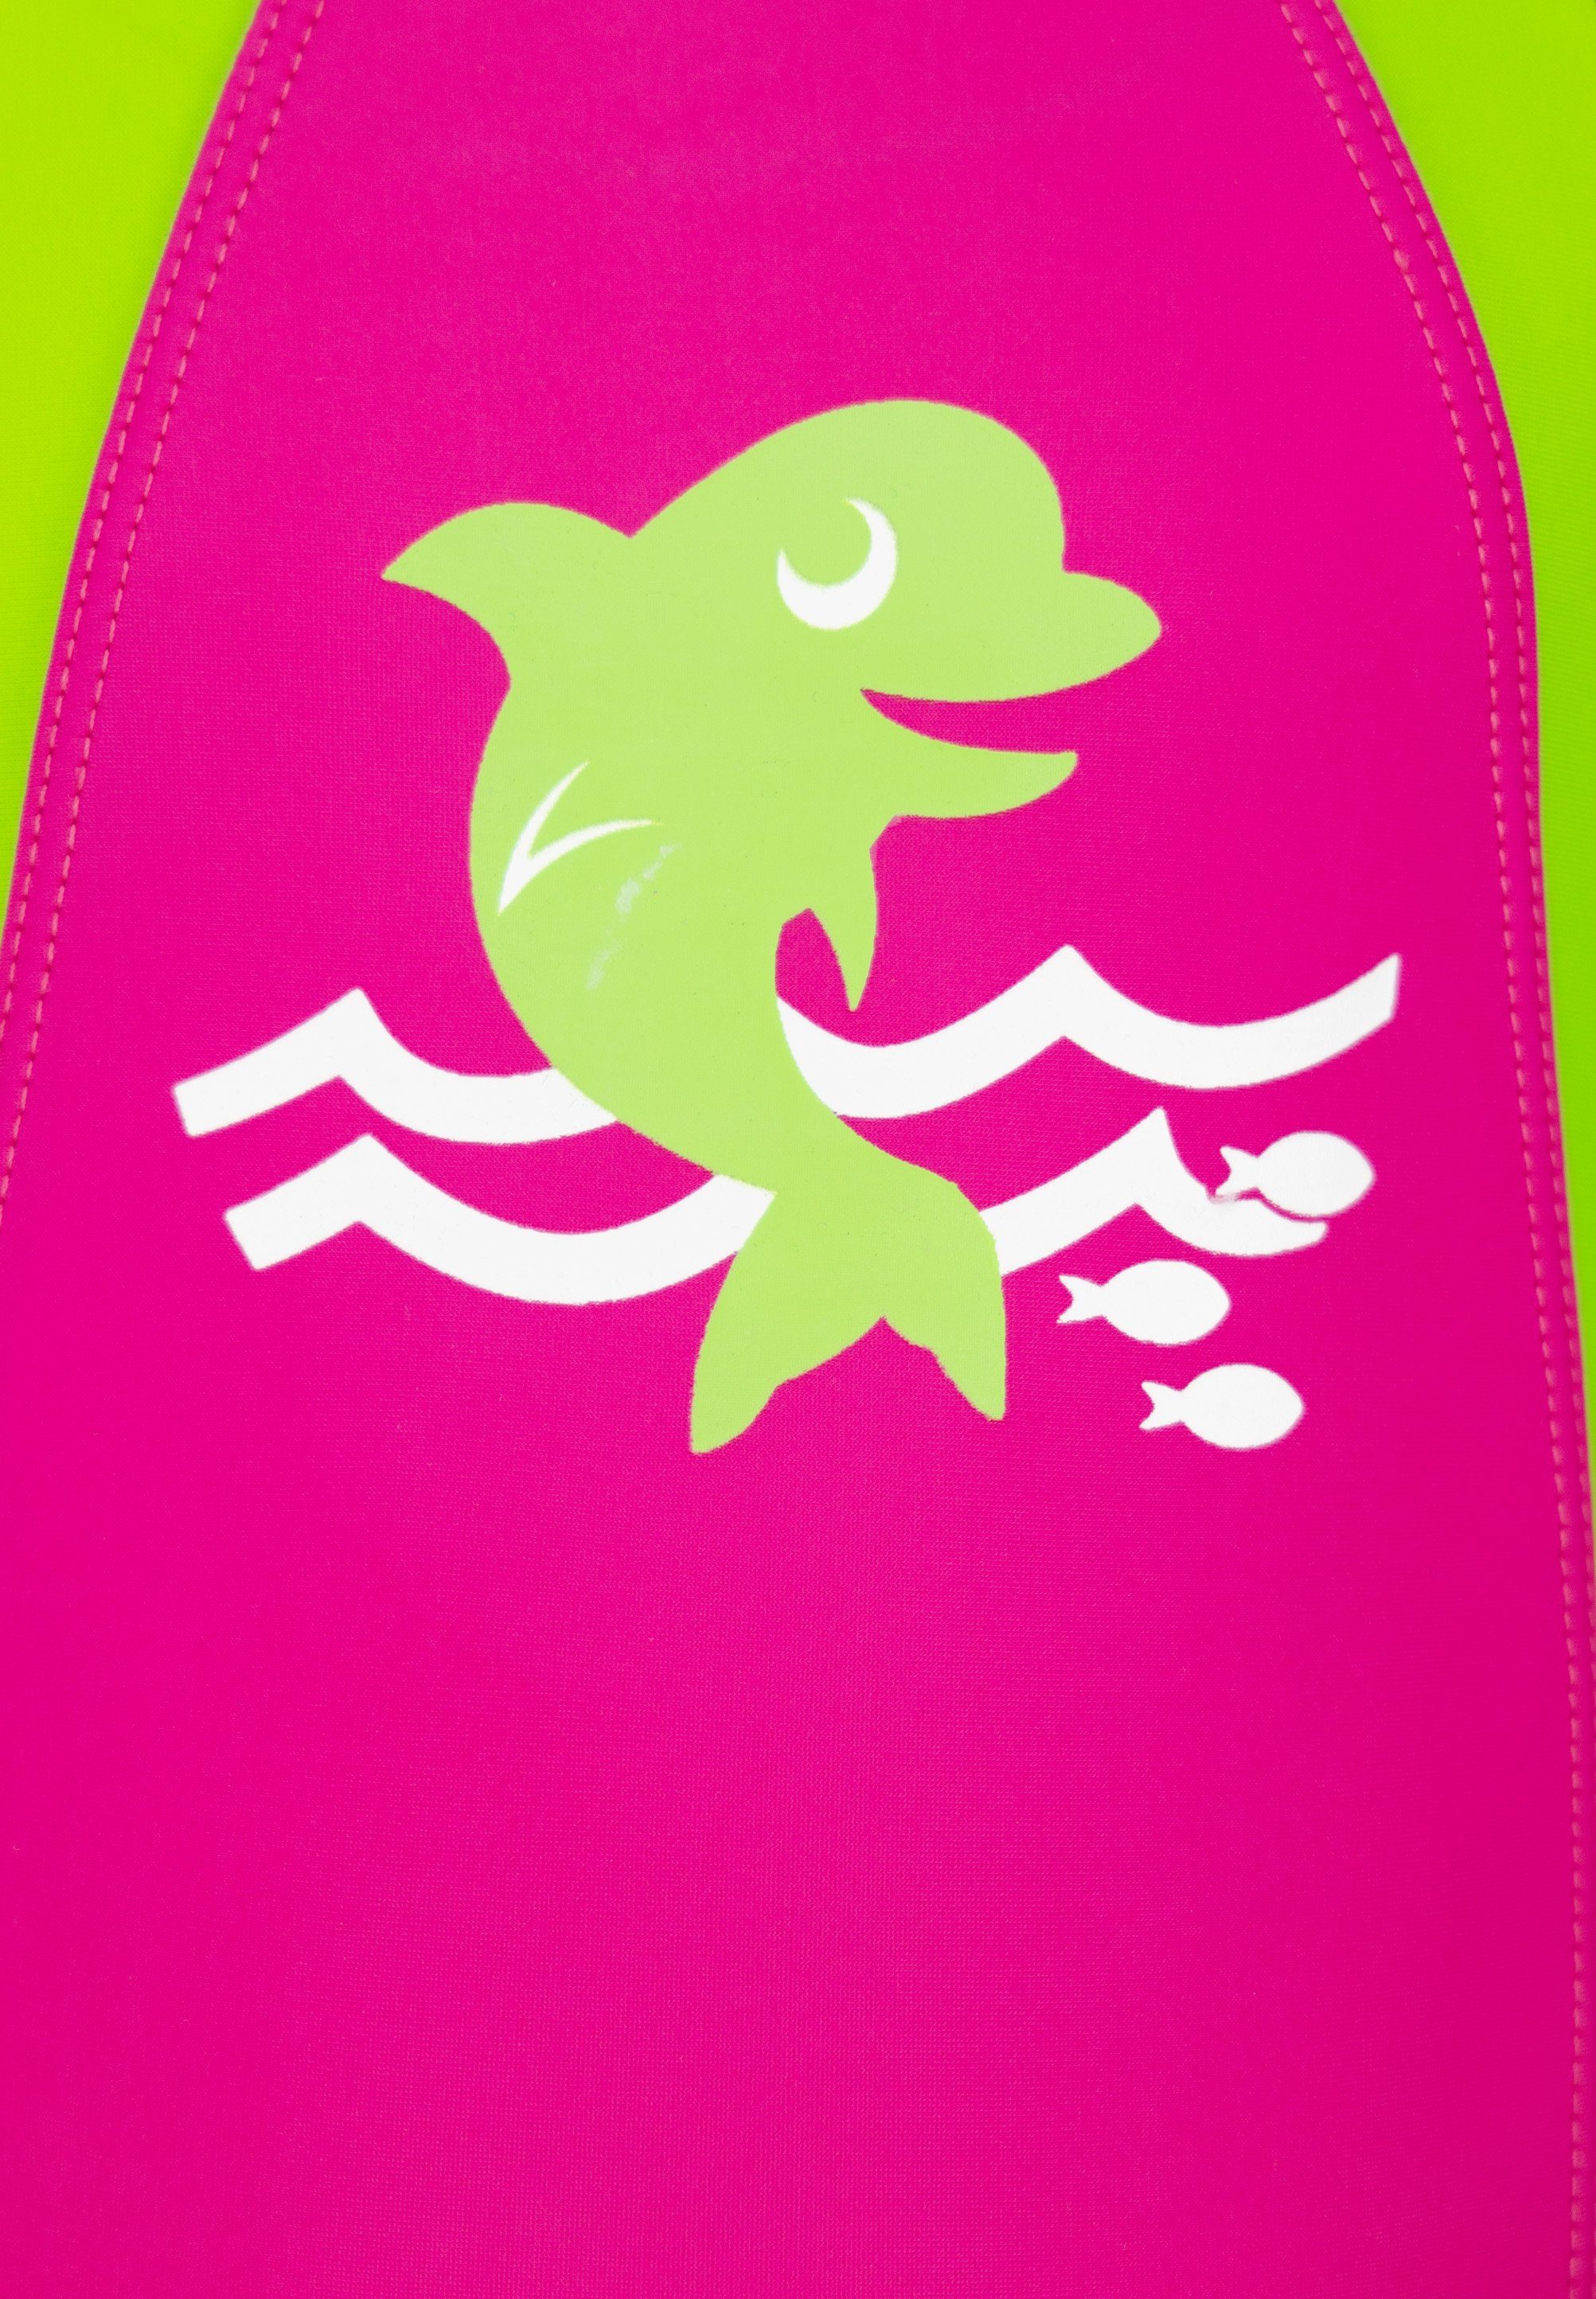 Beco Beermann Badeanzug BECO-SEALIFE® mit pink, 50+ grün UV-Schutz